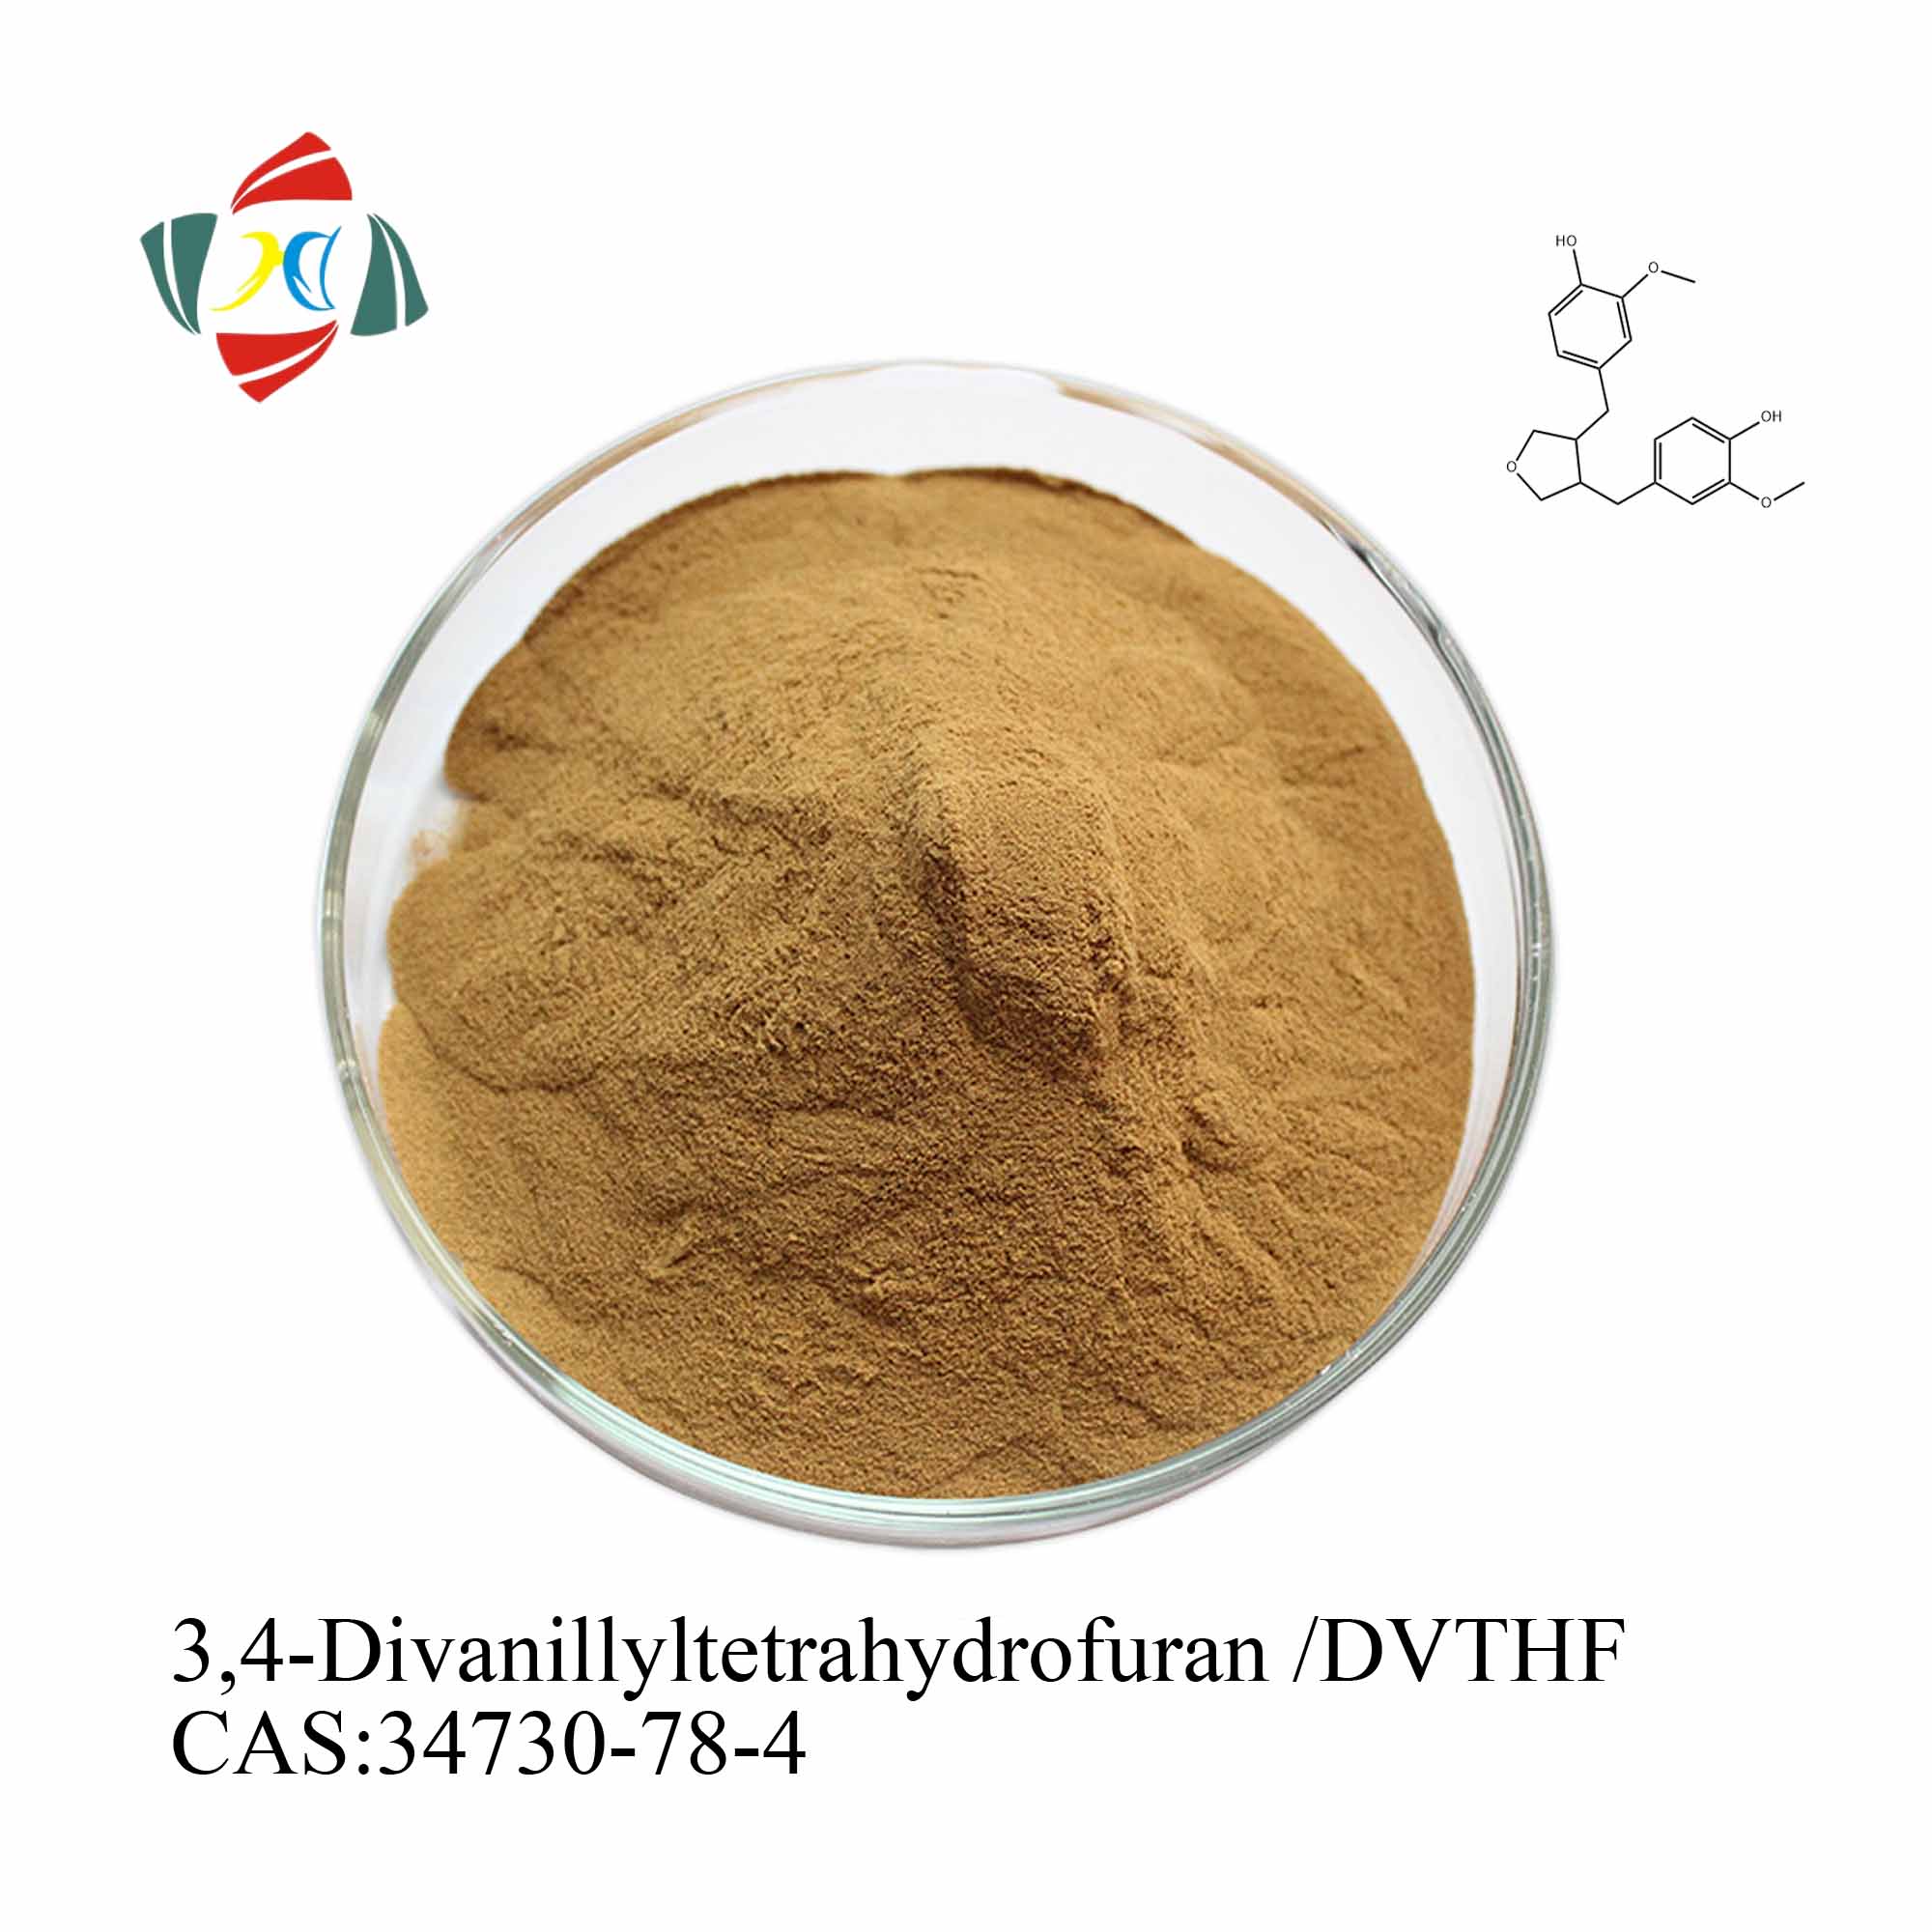 Kup Wysokiej jakości ekstrakt z korzenia pokrzywy 45% 6,7-dihydroksybergamottyna / DHB 95% 3,4-divanillyltetrahydrofuran / DVTHF,Wysokiej jakości ekstrakt z korzenia pokrzywy 45% 6,7-dihydroksybergamottyna / DHB 95% 3,4-divanillyltetrahydrofuran / DVTHF Cena,Wysokiej jakości ekstrakt z korzenia pokrzywy 45% 6,7-dihydroksybergamottyna / DHB 95% 3,4-divanillyltetrahydrofuran / DVTHF marki,Wysokiej jakości ekstrakt z korzenia pokrzywy 45% 6,7-dihydroksybergamottyna / DHB 95% 3,4-divanillyltetrahydrofuran / DVTHF Producent,Wysokiej jakości ekstrakt z korzenia pokrzywy 45% 6,7-dihydroksybergamottyna / DHB 95% 3,4-divanillyltetrahydrofuran / DVTHF Cytaty,Wysokiej jakości ekstrakt z korzenia pokrzywy 45% 6,7-dihydroksybergamottyna / DHB 95% 3,4-divanillyltetrahydrofuran / DVTHF spółka,